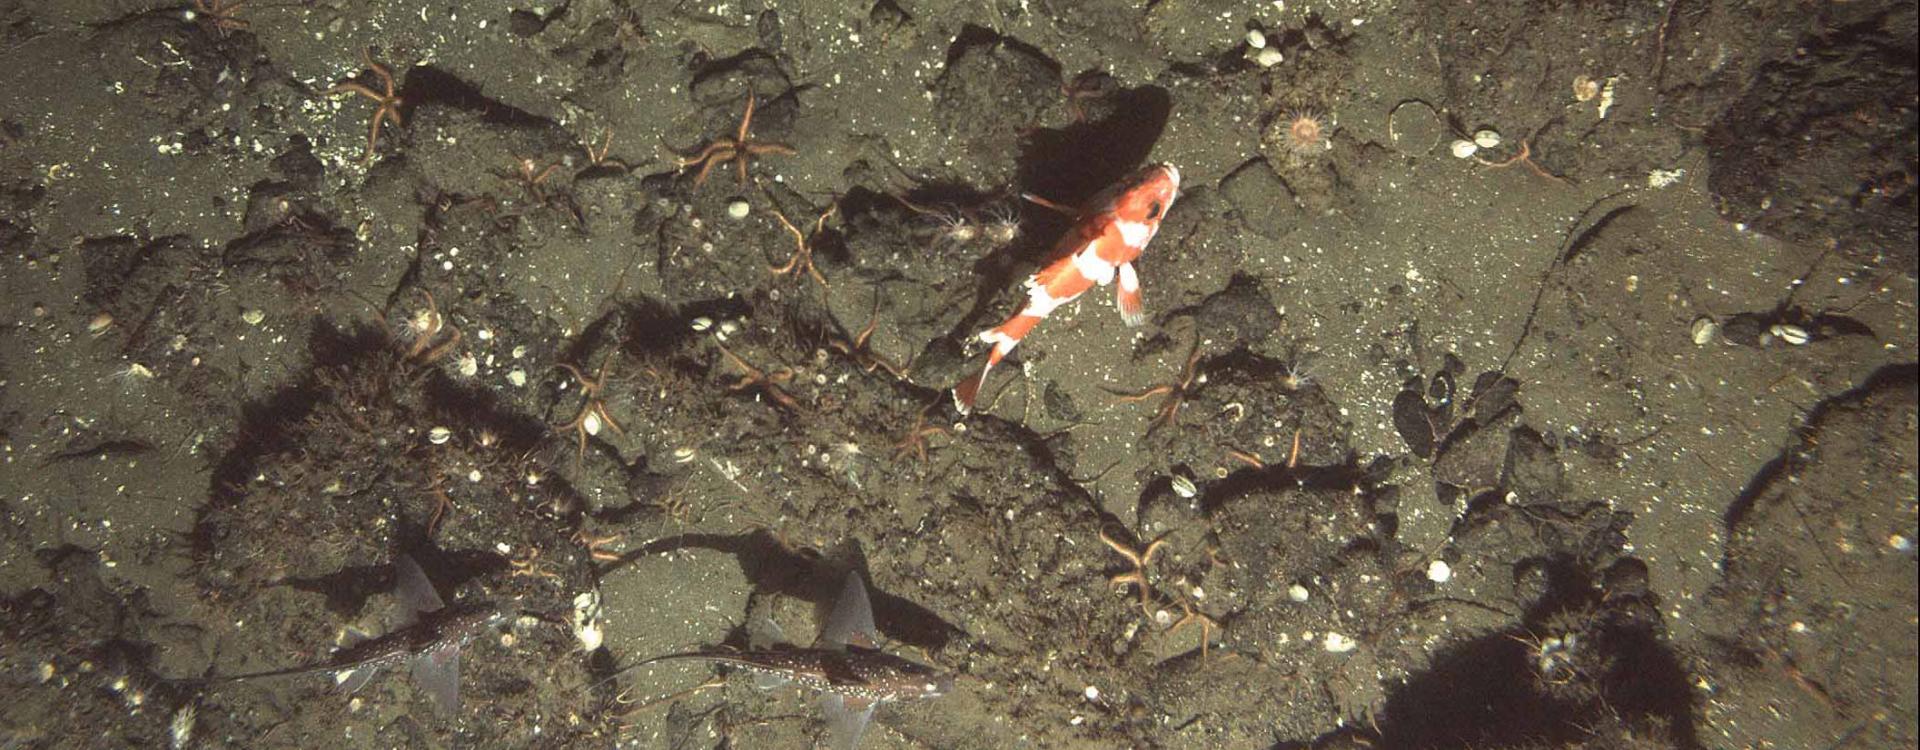 Flag rockfish on asphalt seafloor